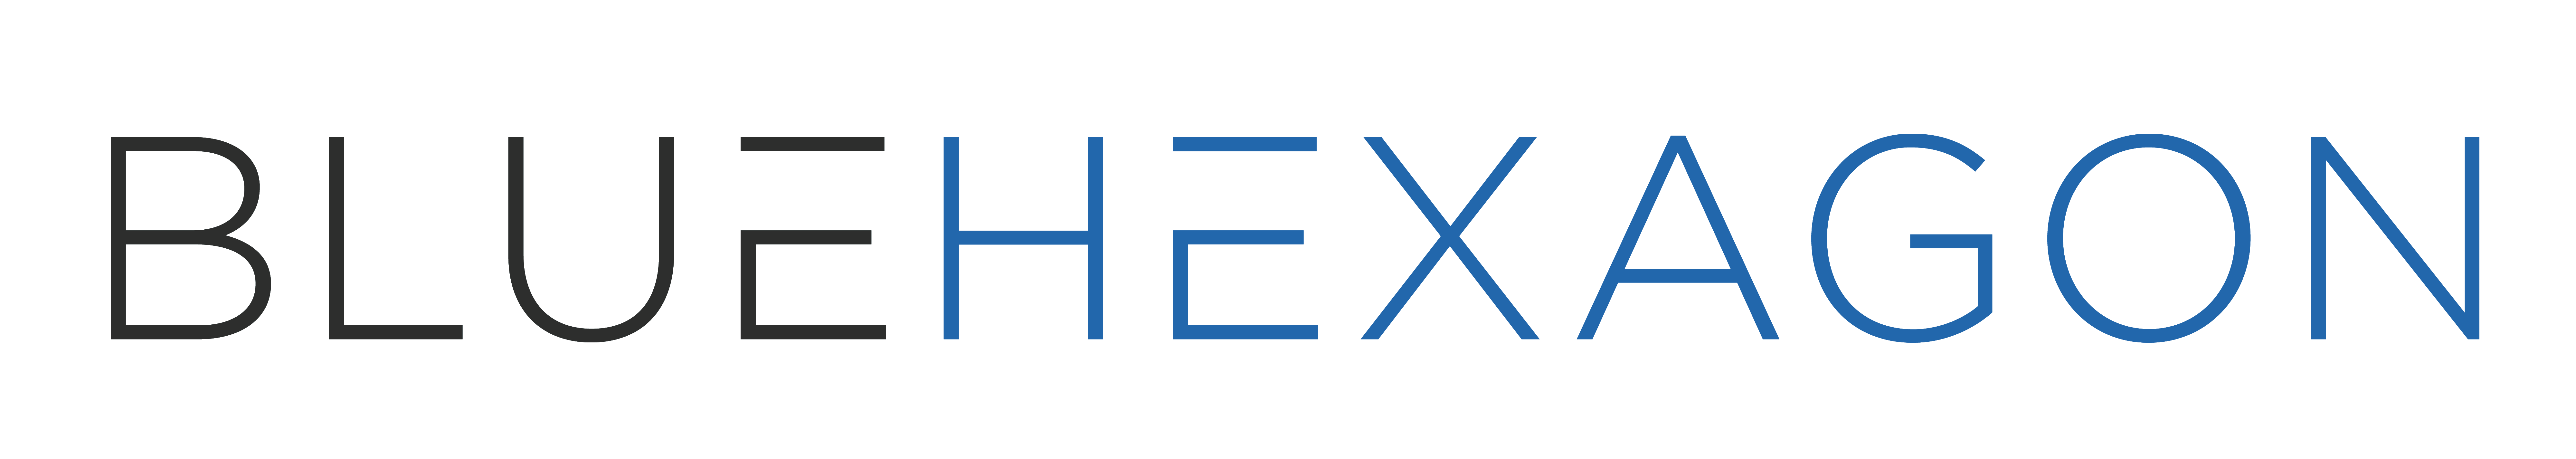 Blue Hexagon Logo - Home | Blue Hexagon